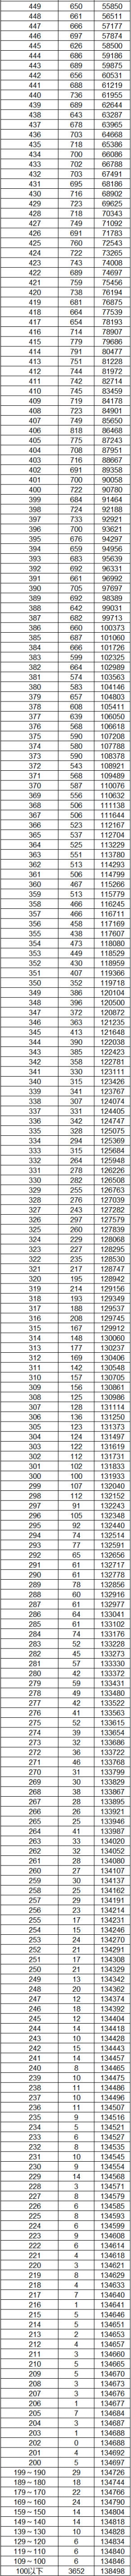 2023云南高考文科一分一段表 成绩位次排名